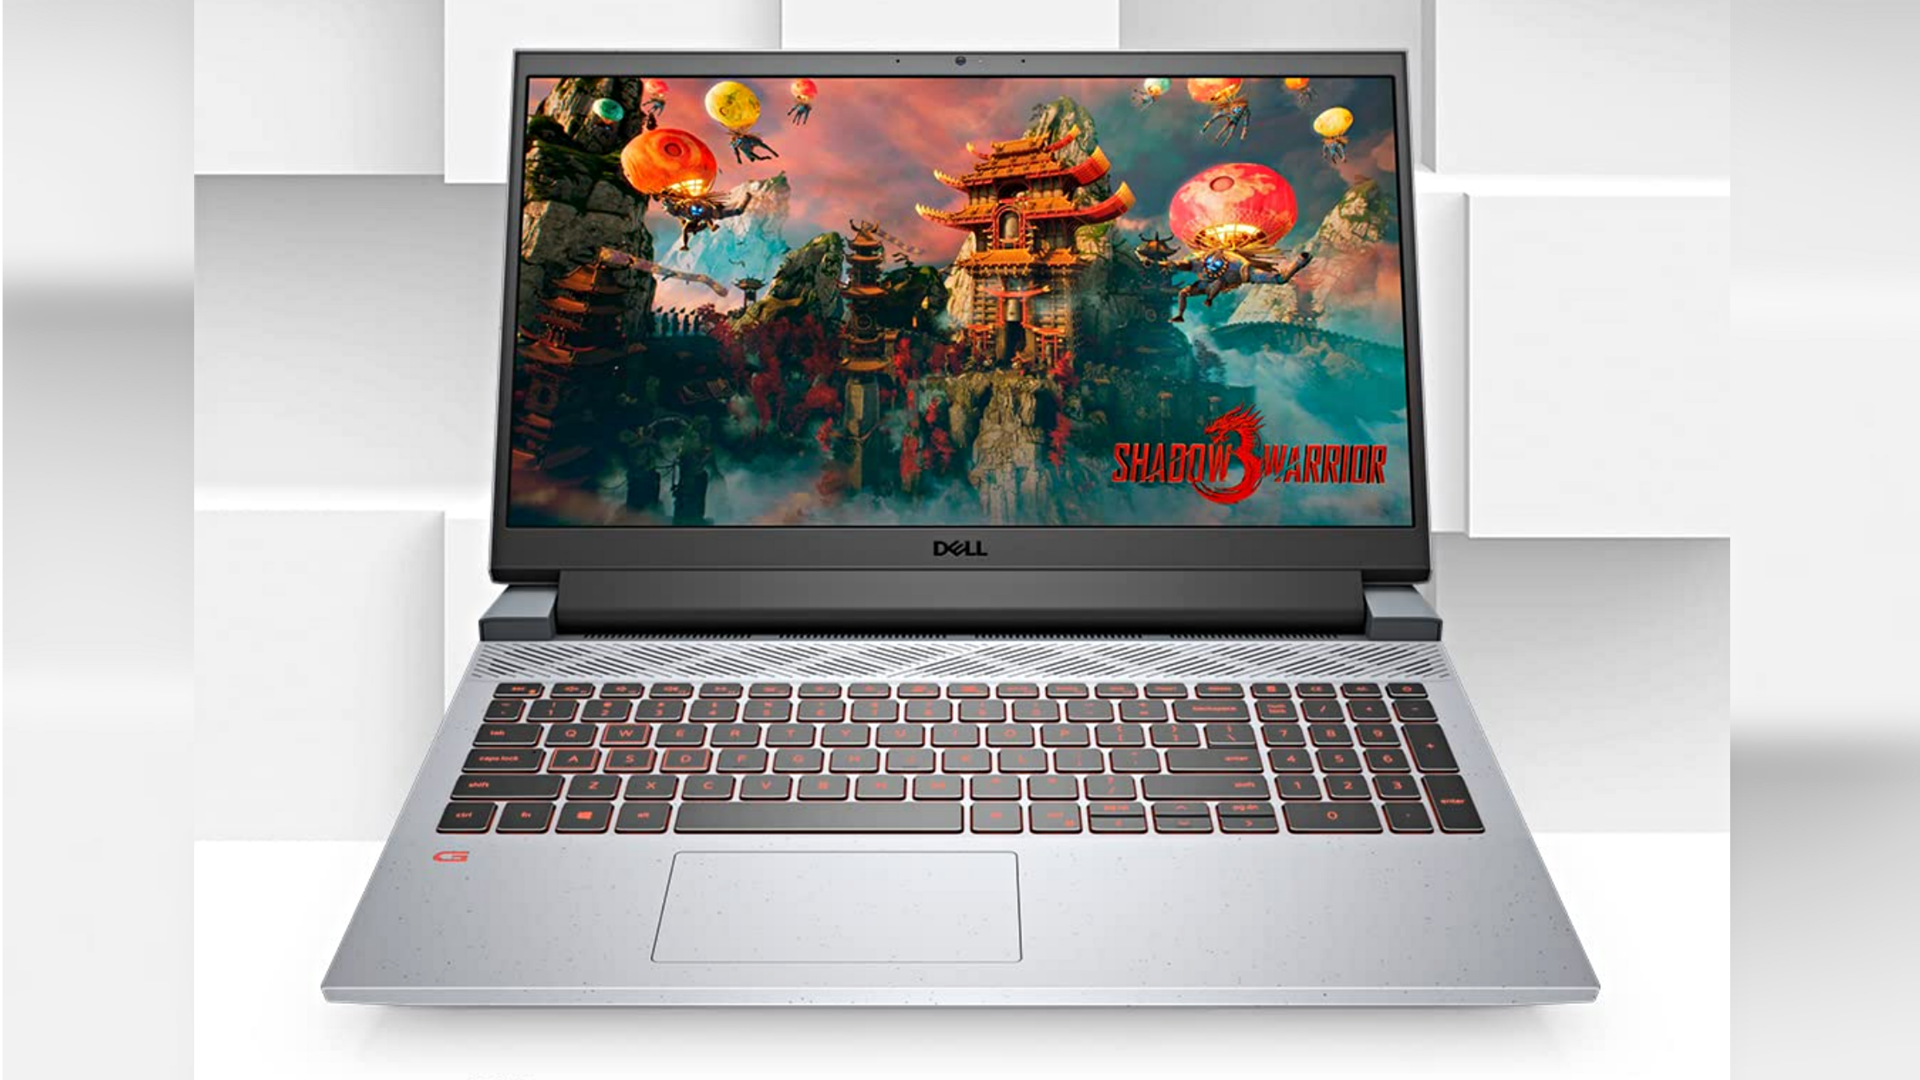 Dell G15 gaming laptop is now cheaper on Flipkart